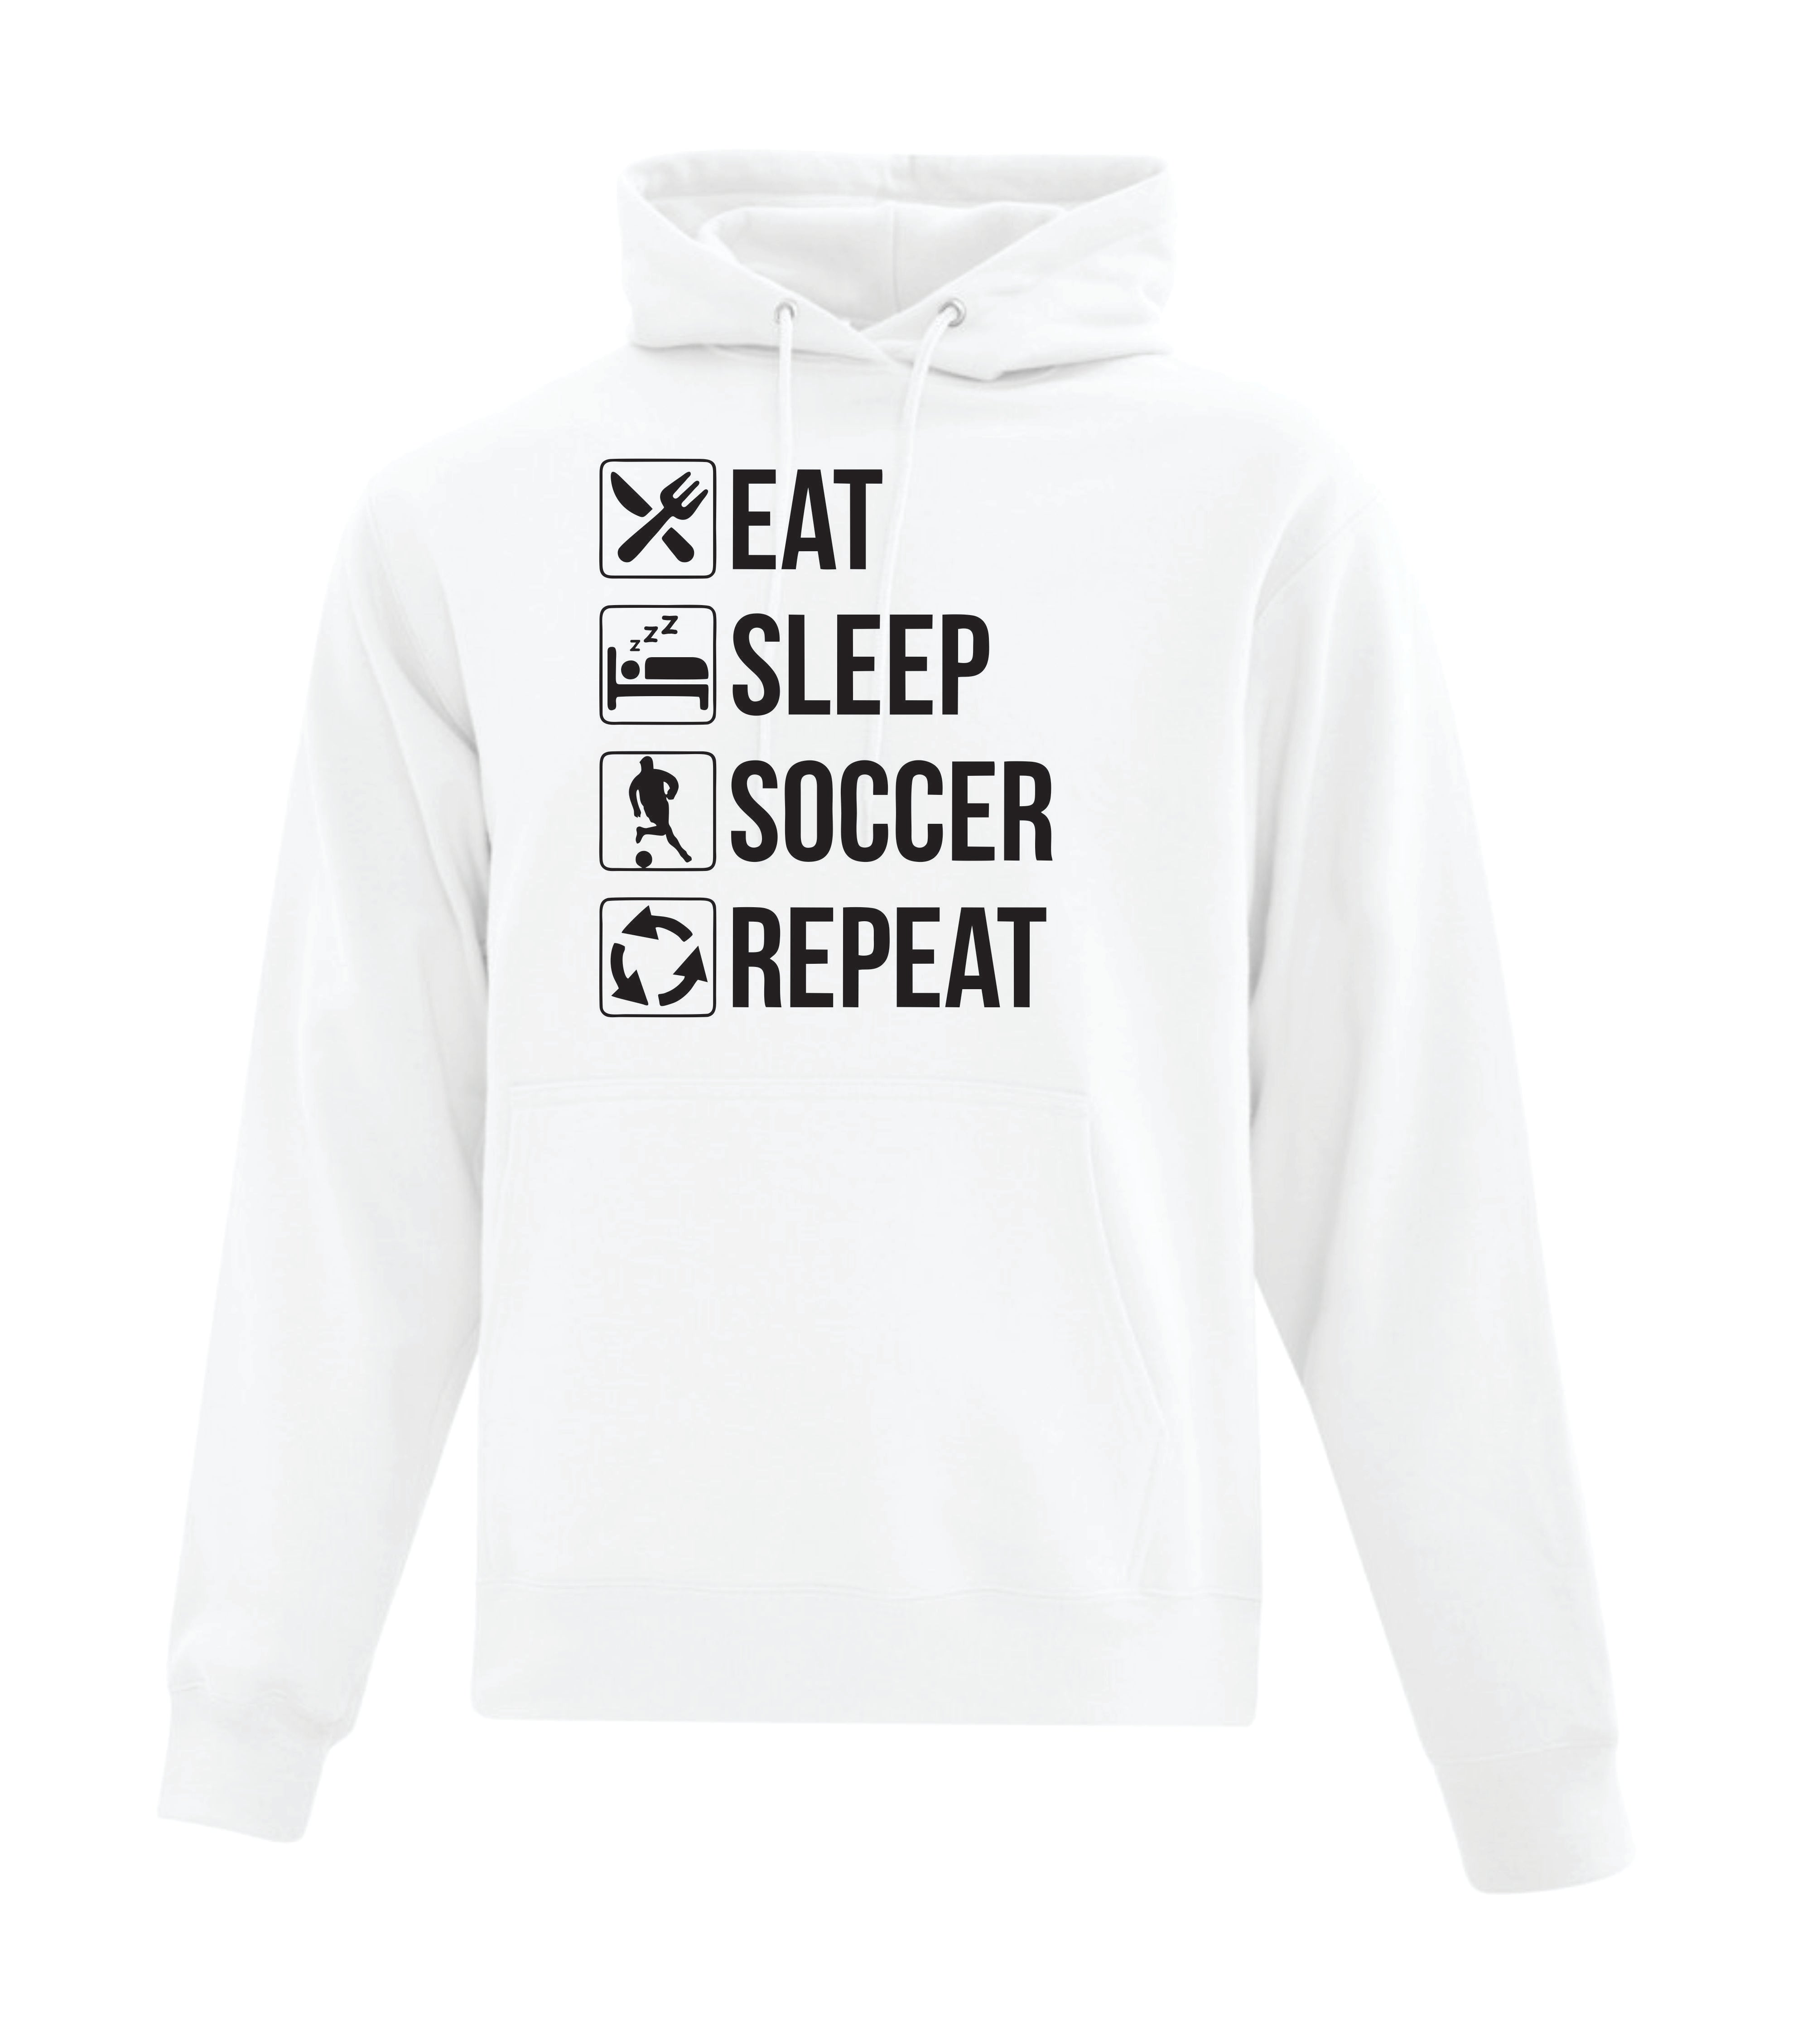 Eat, Sleep, Soccer, Repeat Hoodie (Adult Sizes)